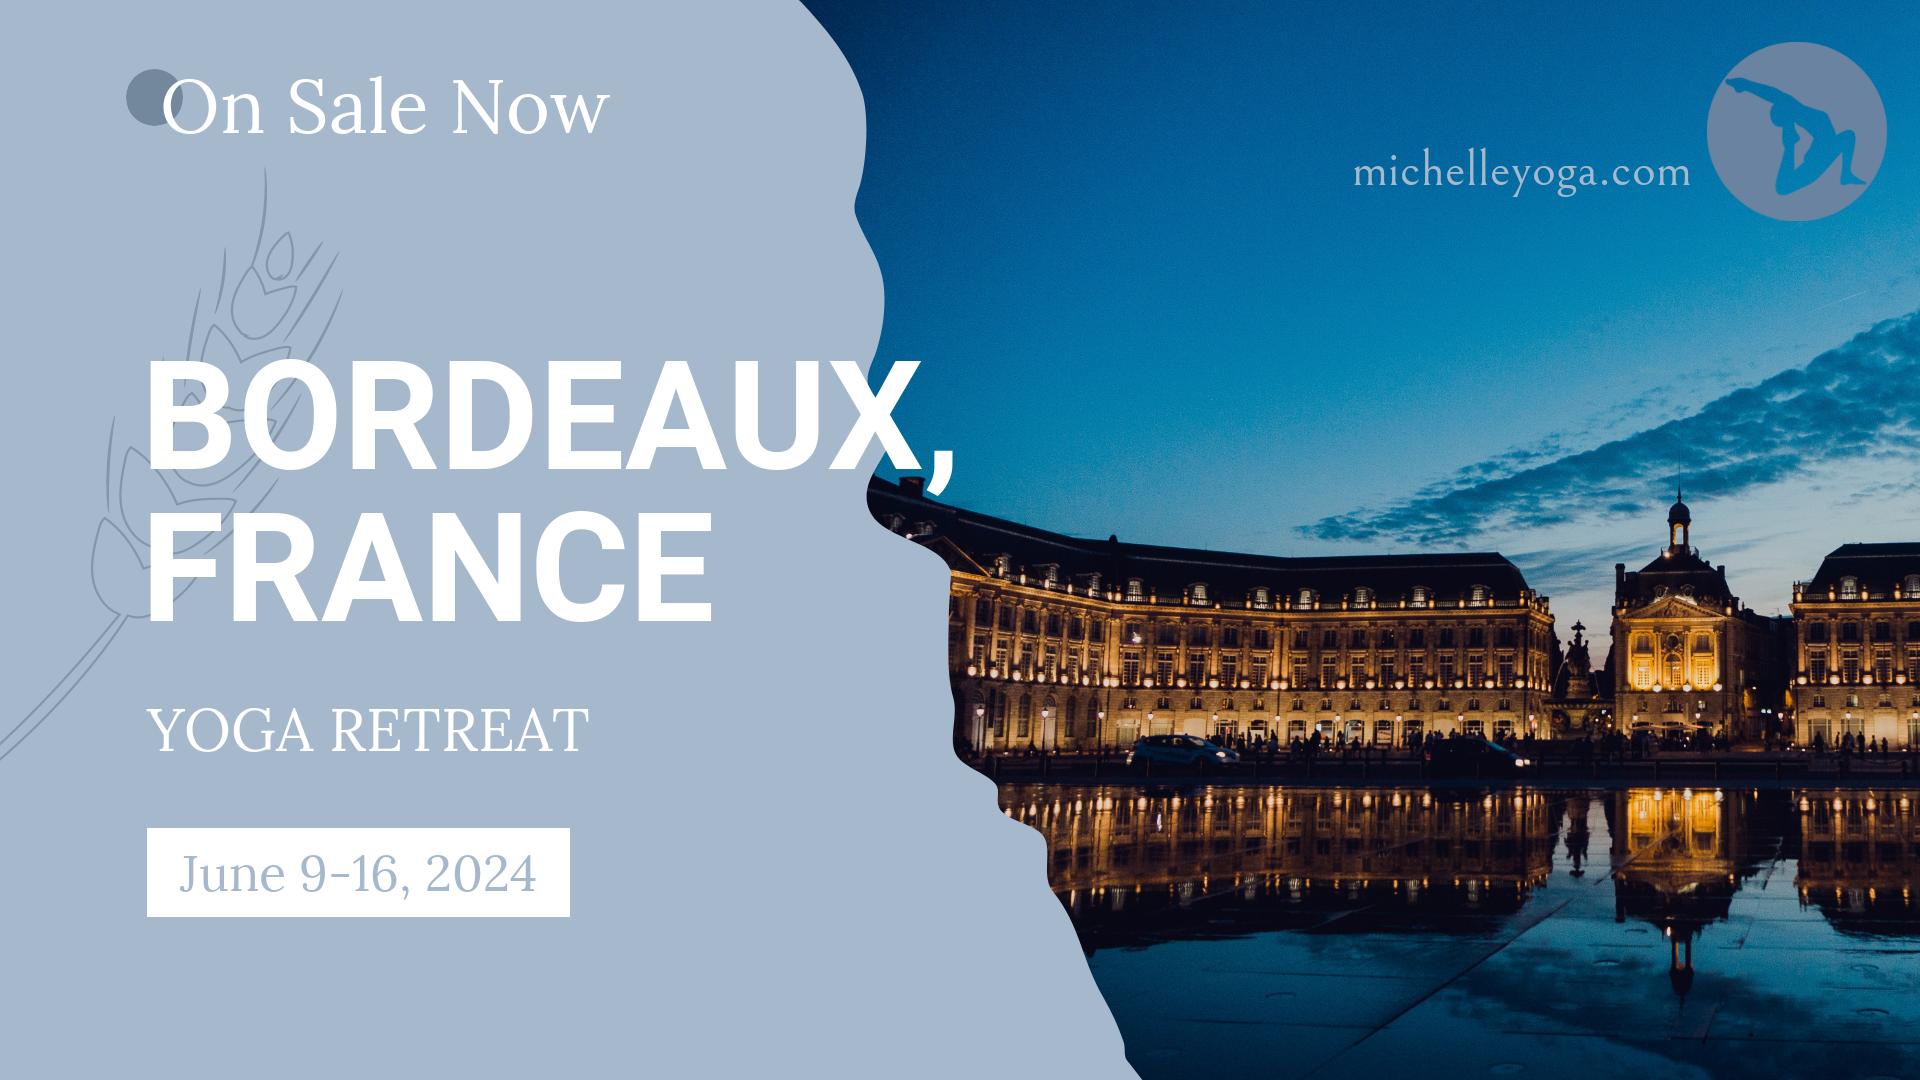 Michelle Yoga Bordeaux France Yoga Retreat June 2024